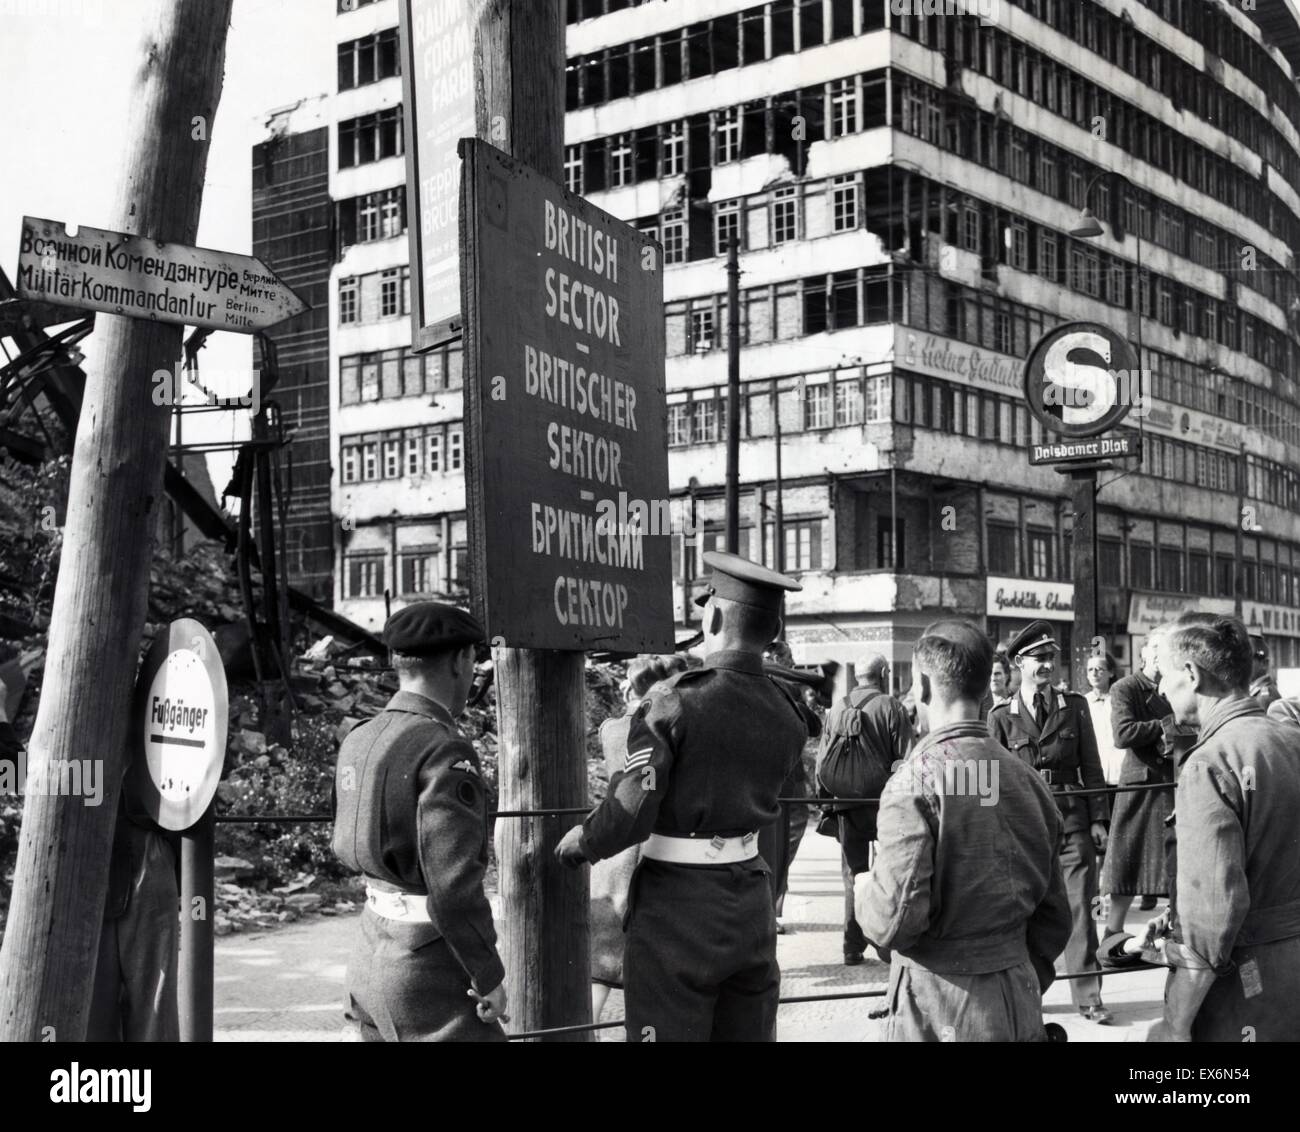 Foto der britischen Militärpolizei ein Zeichen zu markieren Sie Abteilung der britischen und russischen Sektoren Berlins zu errichten. Von Jack Chitham fotografiert. Datiert 1948 Stockfoto